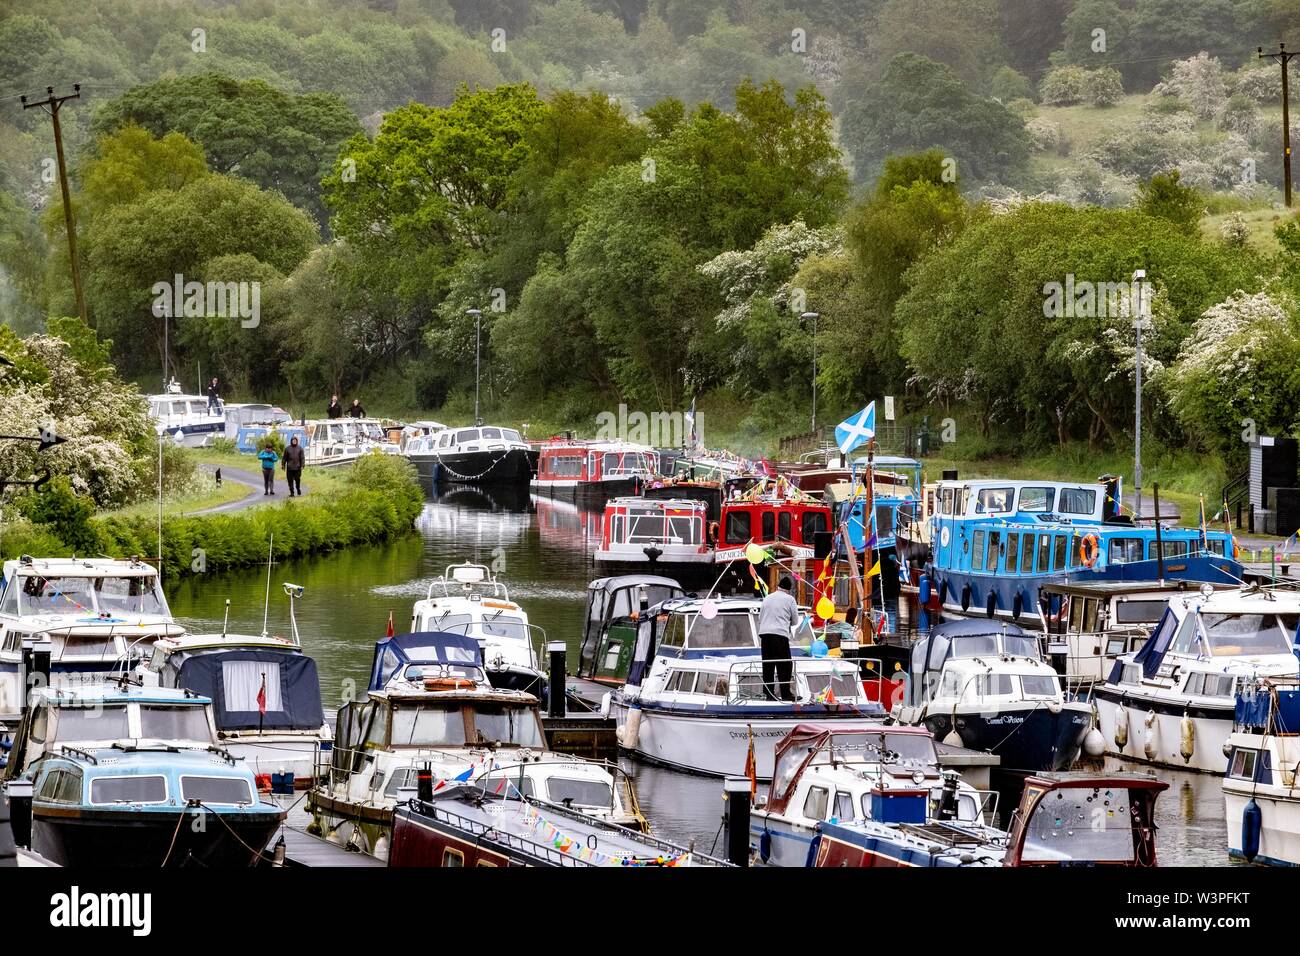 Boote, Kähne und Kanus auf Forth und Clyde Kanal Stockfoto